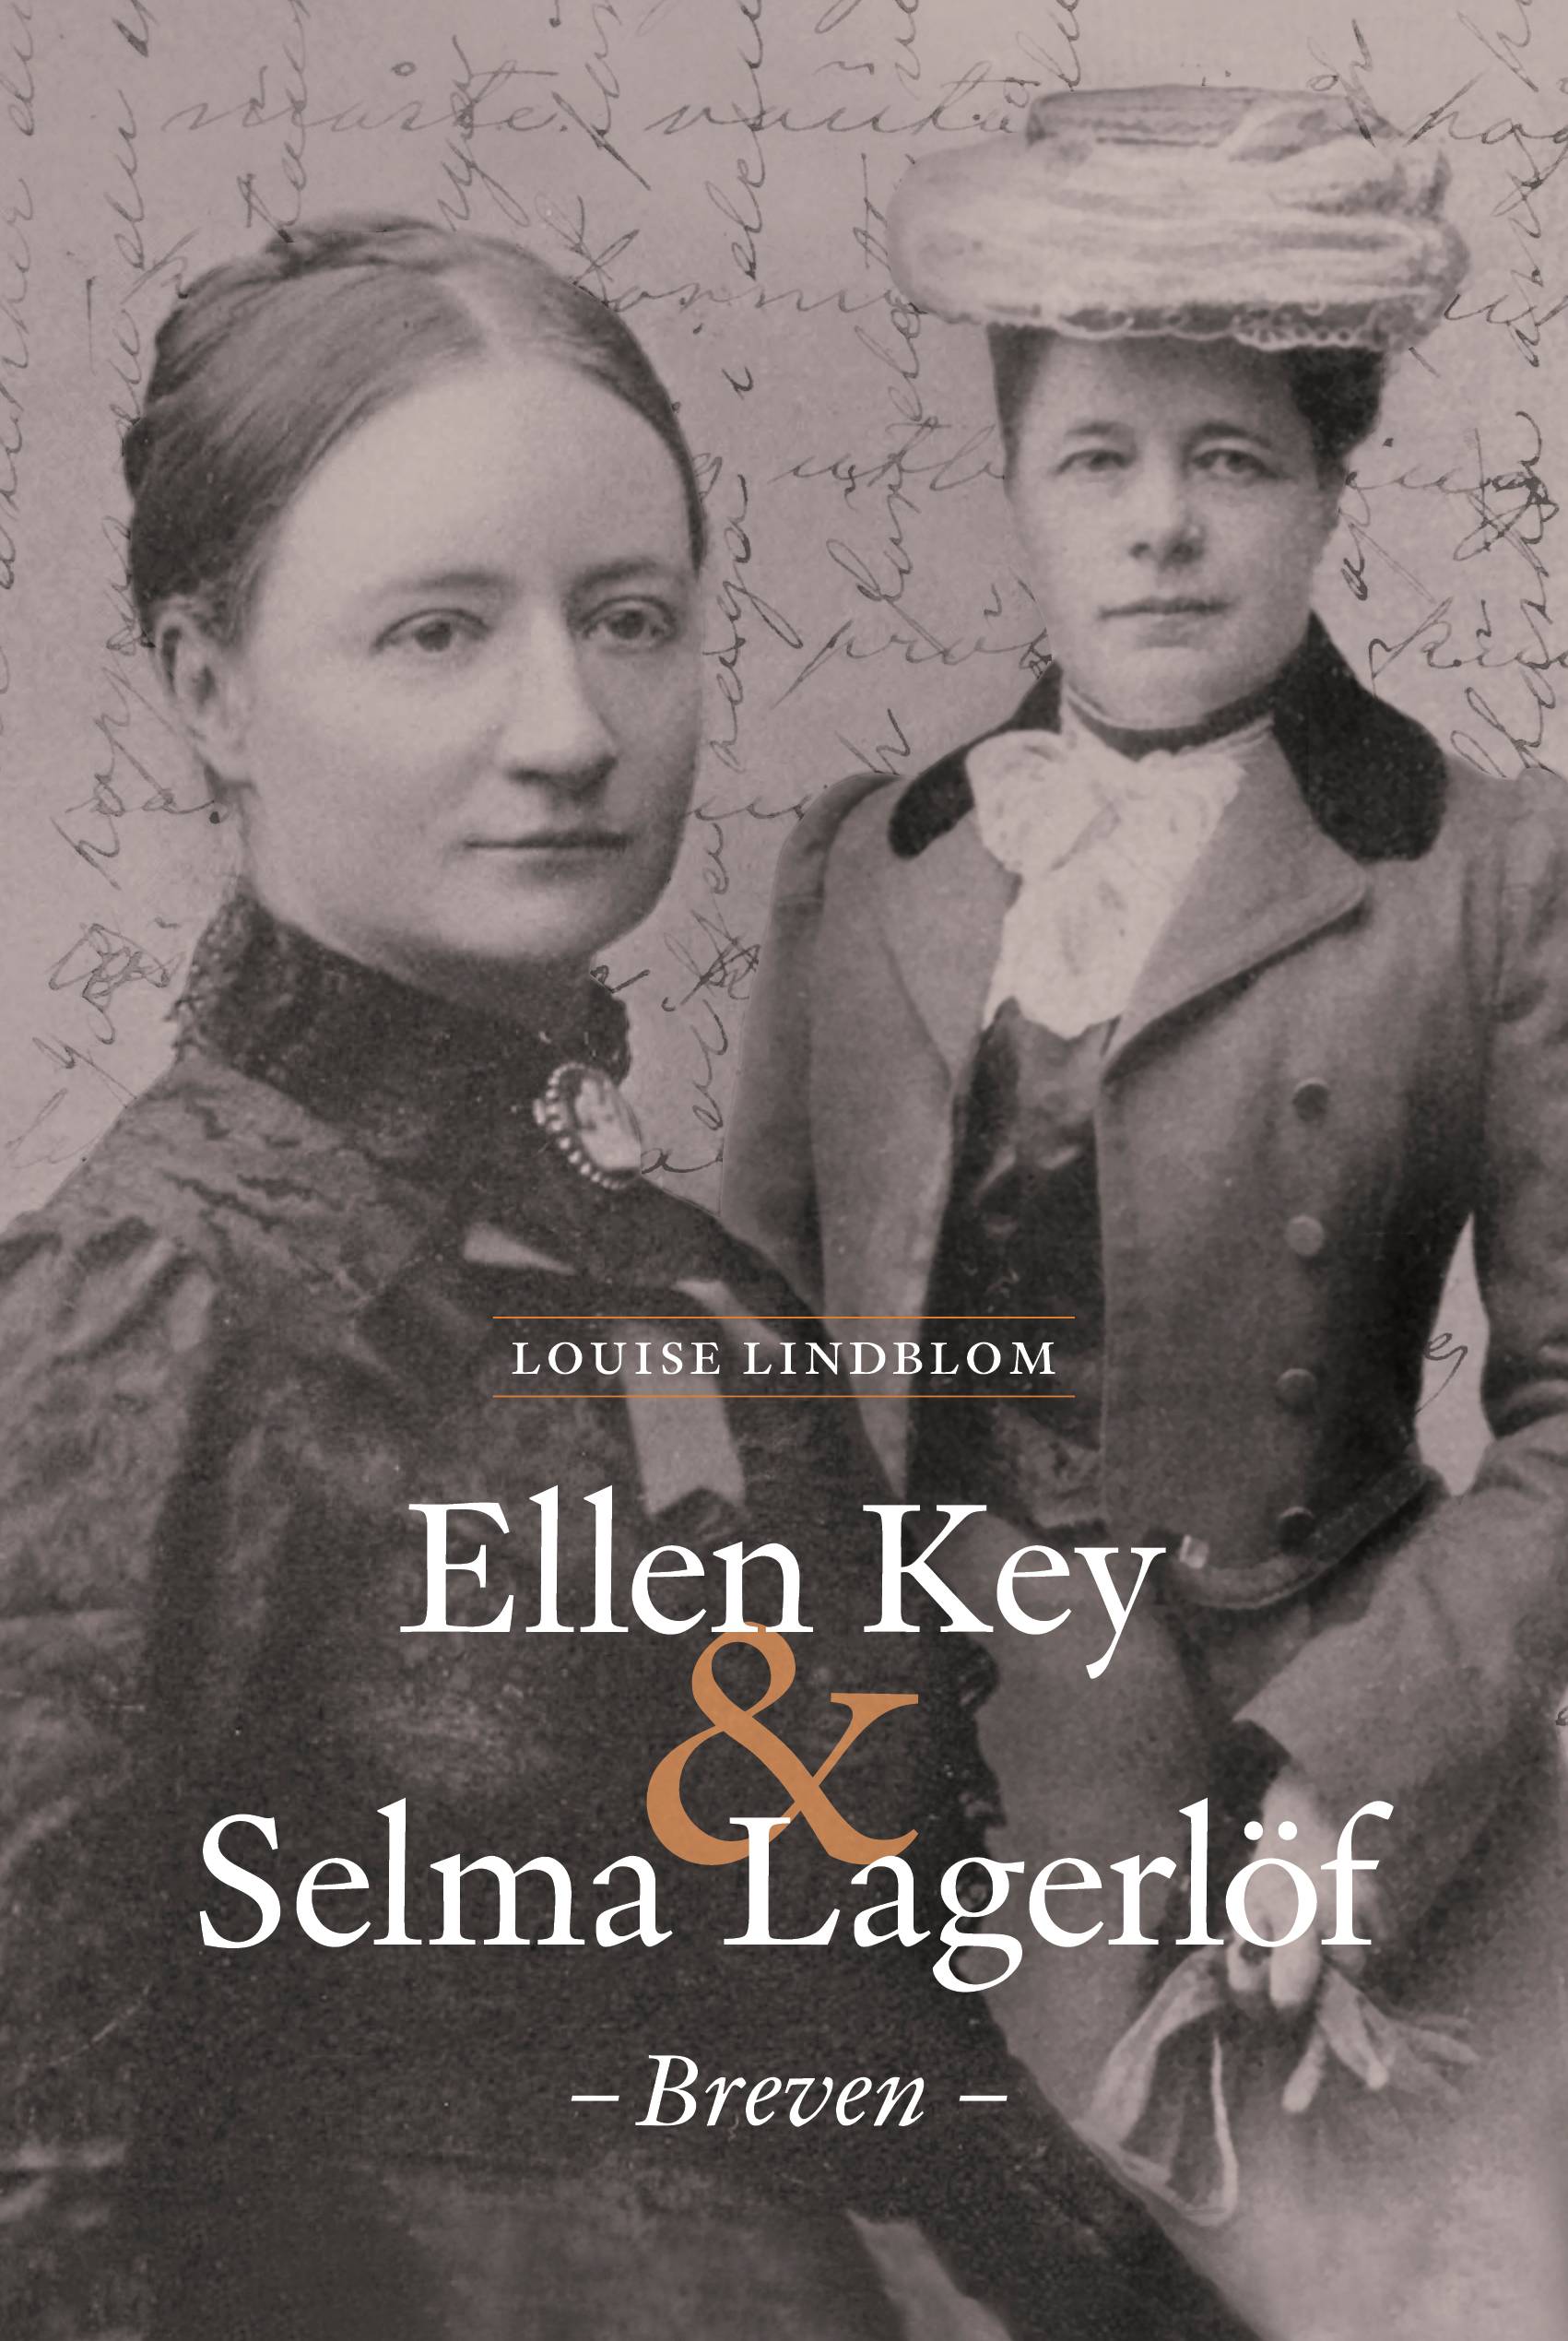 Ellen Key & Selma Lagerlöf - breven